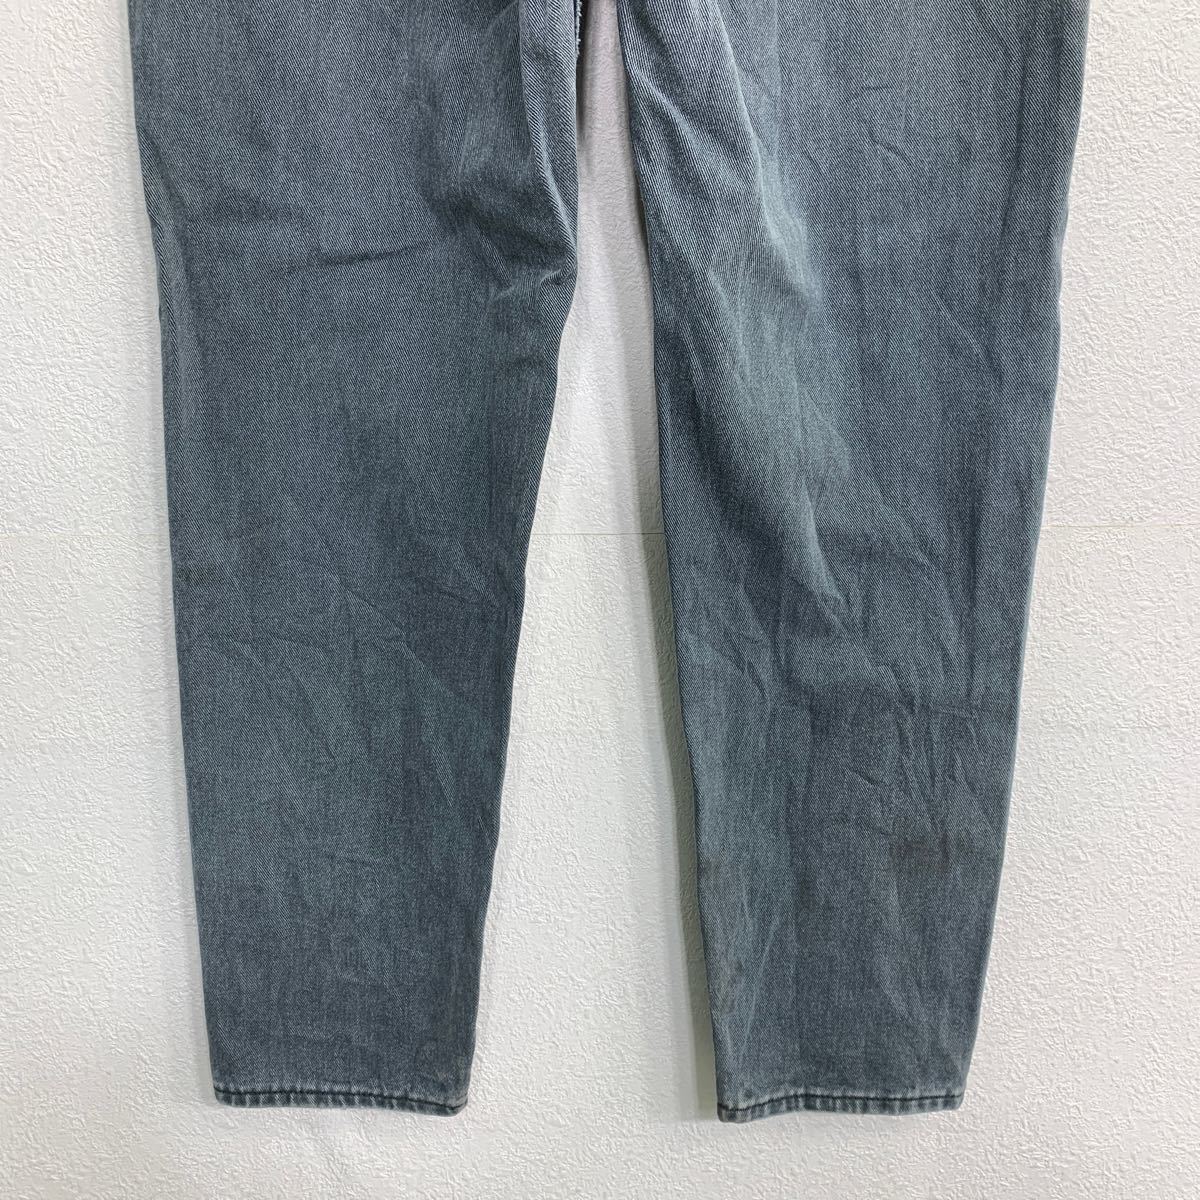 Lee Denim брюки W32 Lee женский серый серия хлопок USA производства б/у одежда . America скупка 2312-672